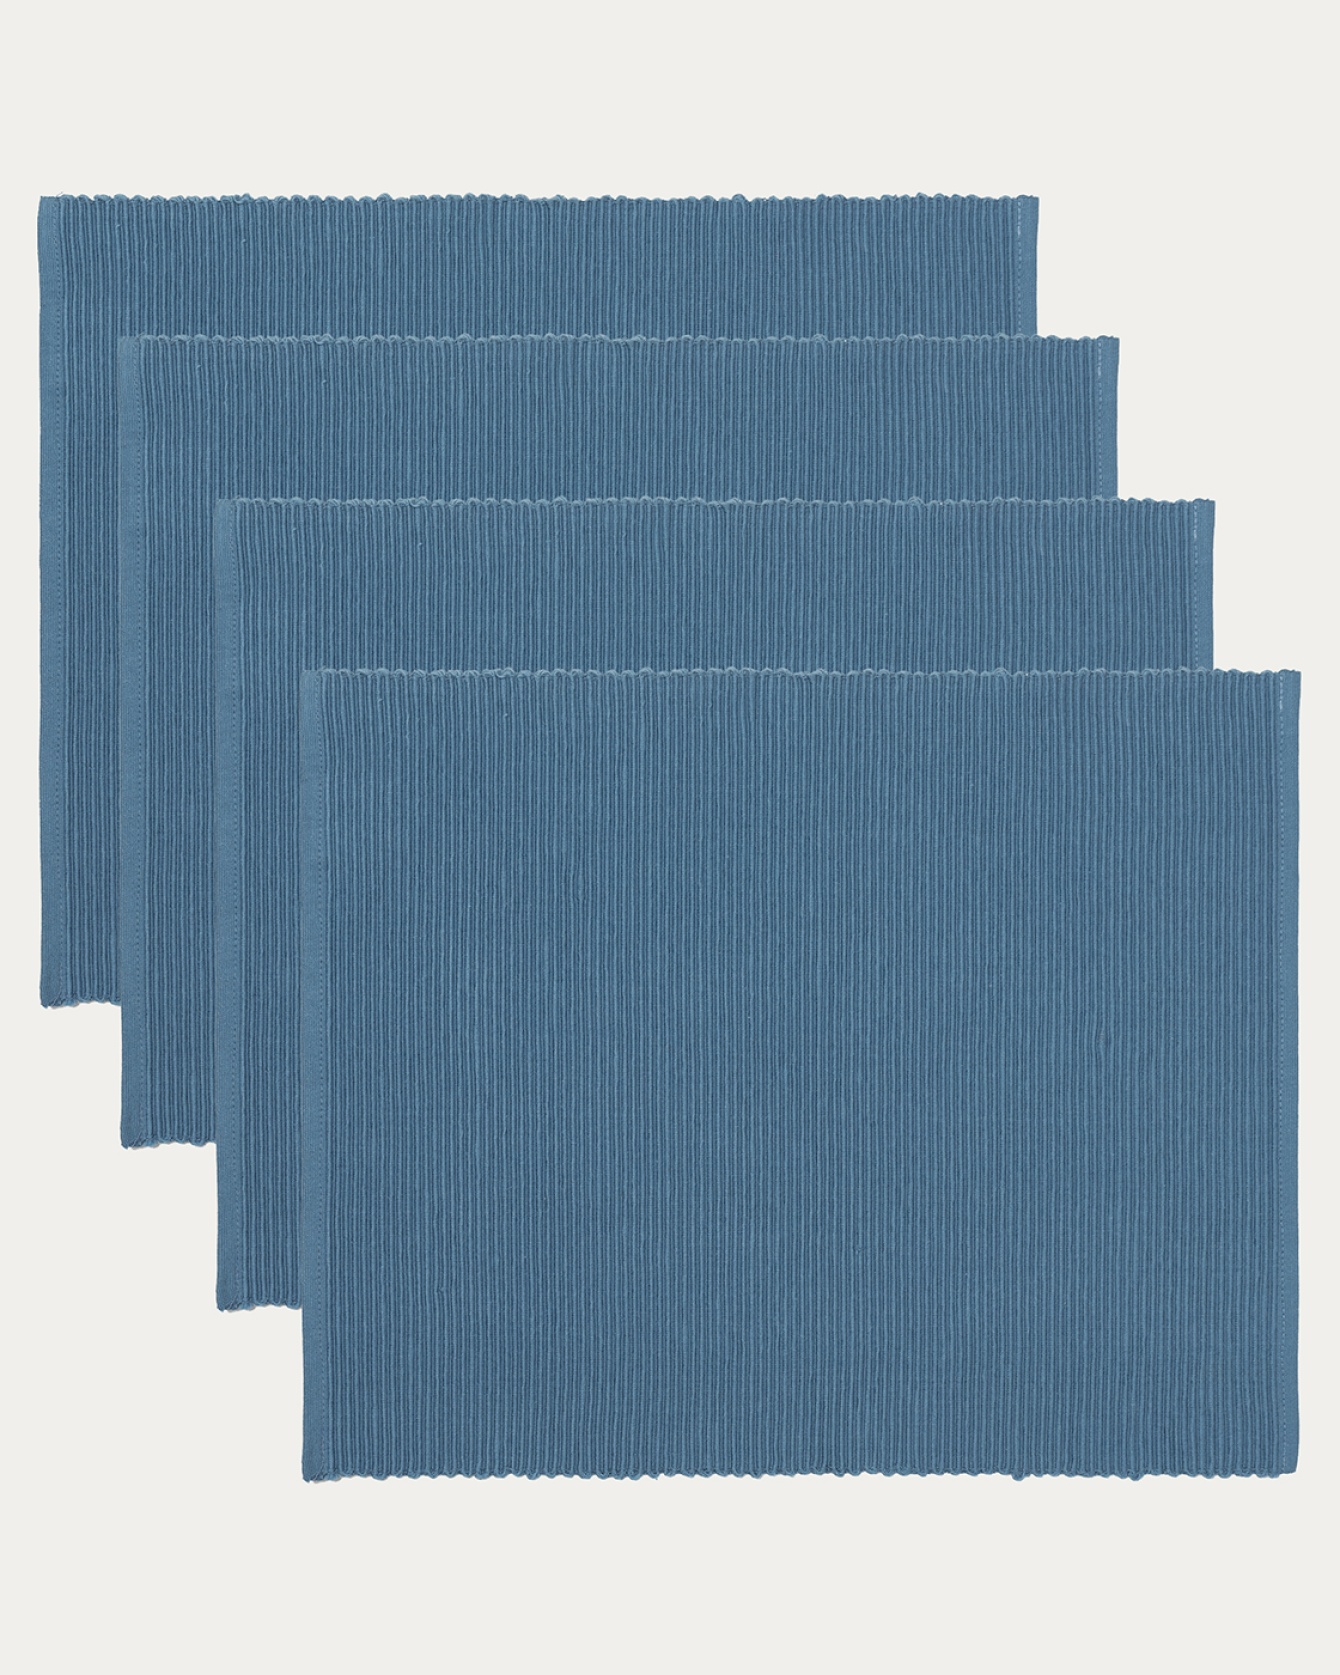 Produktbild djup havsblå UNI bordstablett av mjuk bomull i ribbad kvalité från LINUM DESIGN. Storlek 35x46 cm och säljs i 4-pack.